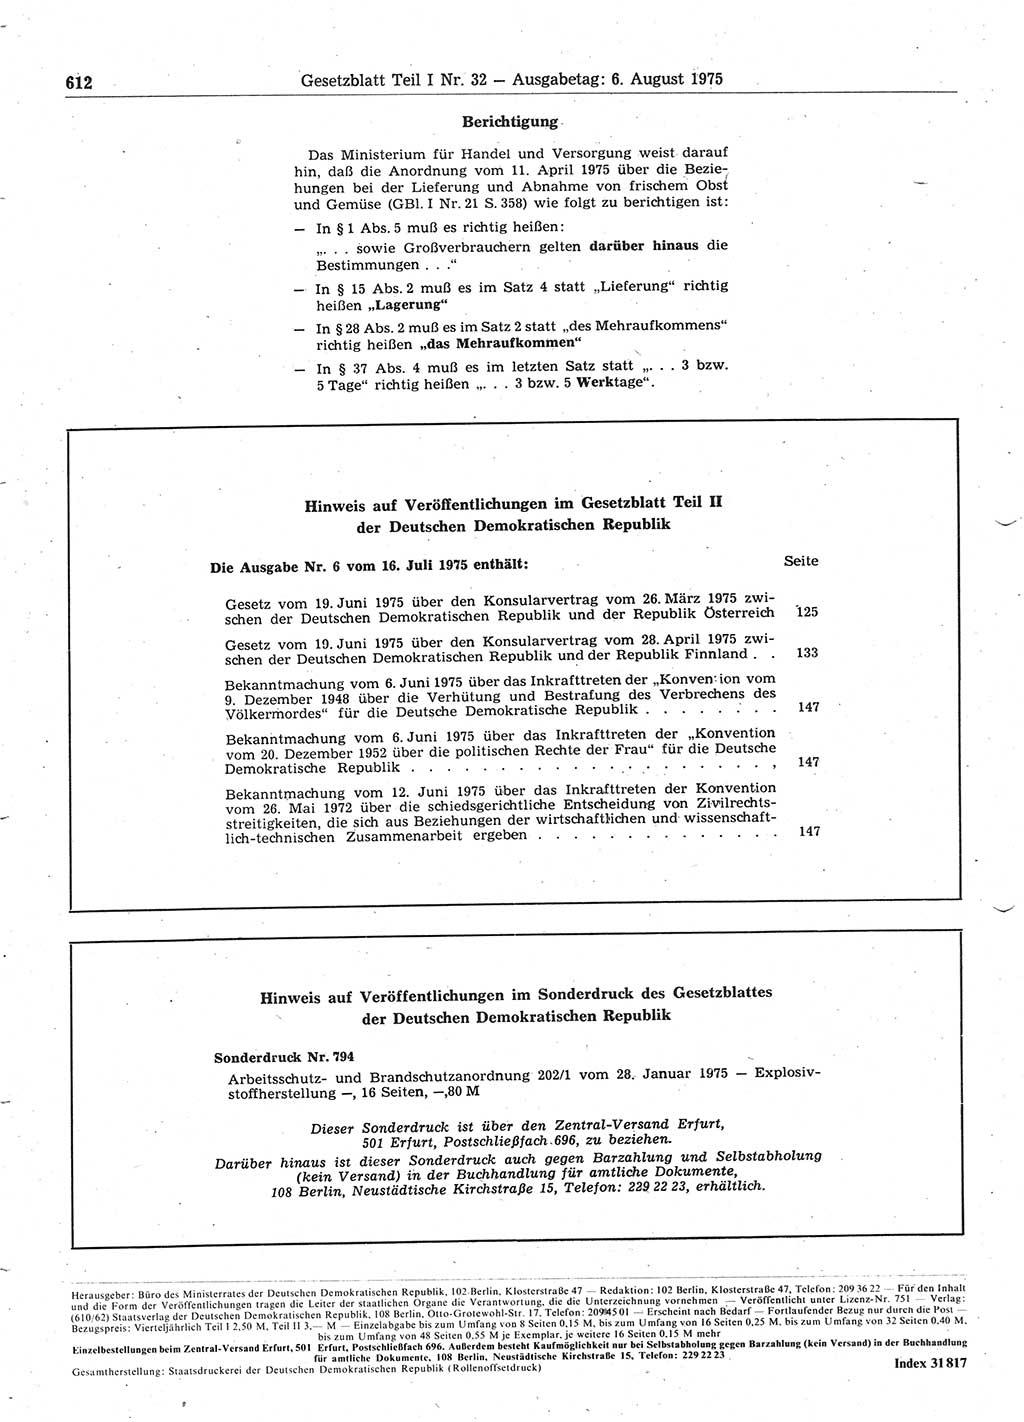 Gesetzblatt (GBl.) der Deutschen Demokratischen Republik (DDR) Teil Ⅰ 1975, Seite 612 (GBl. DDR Ⅰ 1975, S. 612)